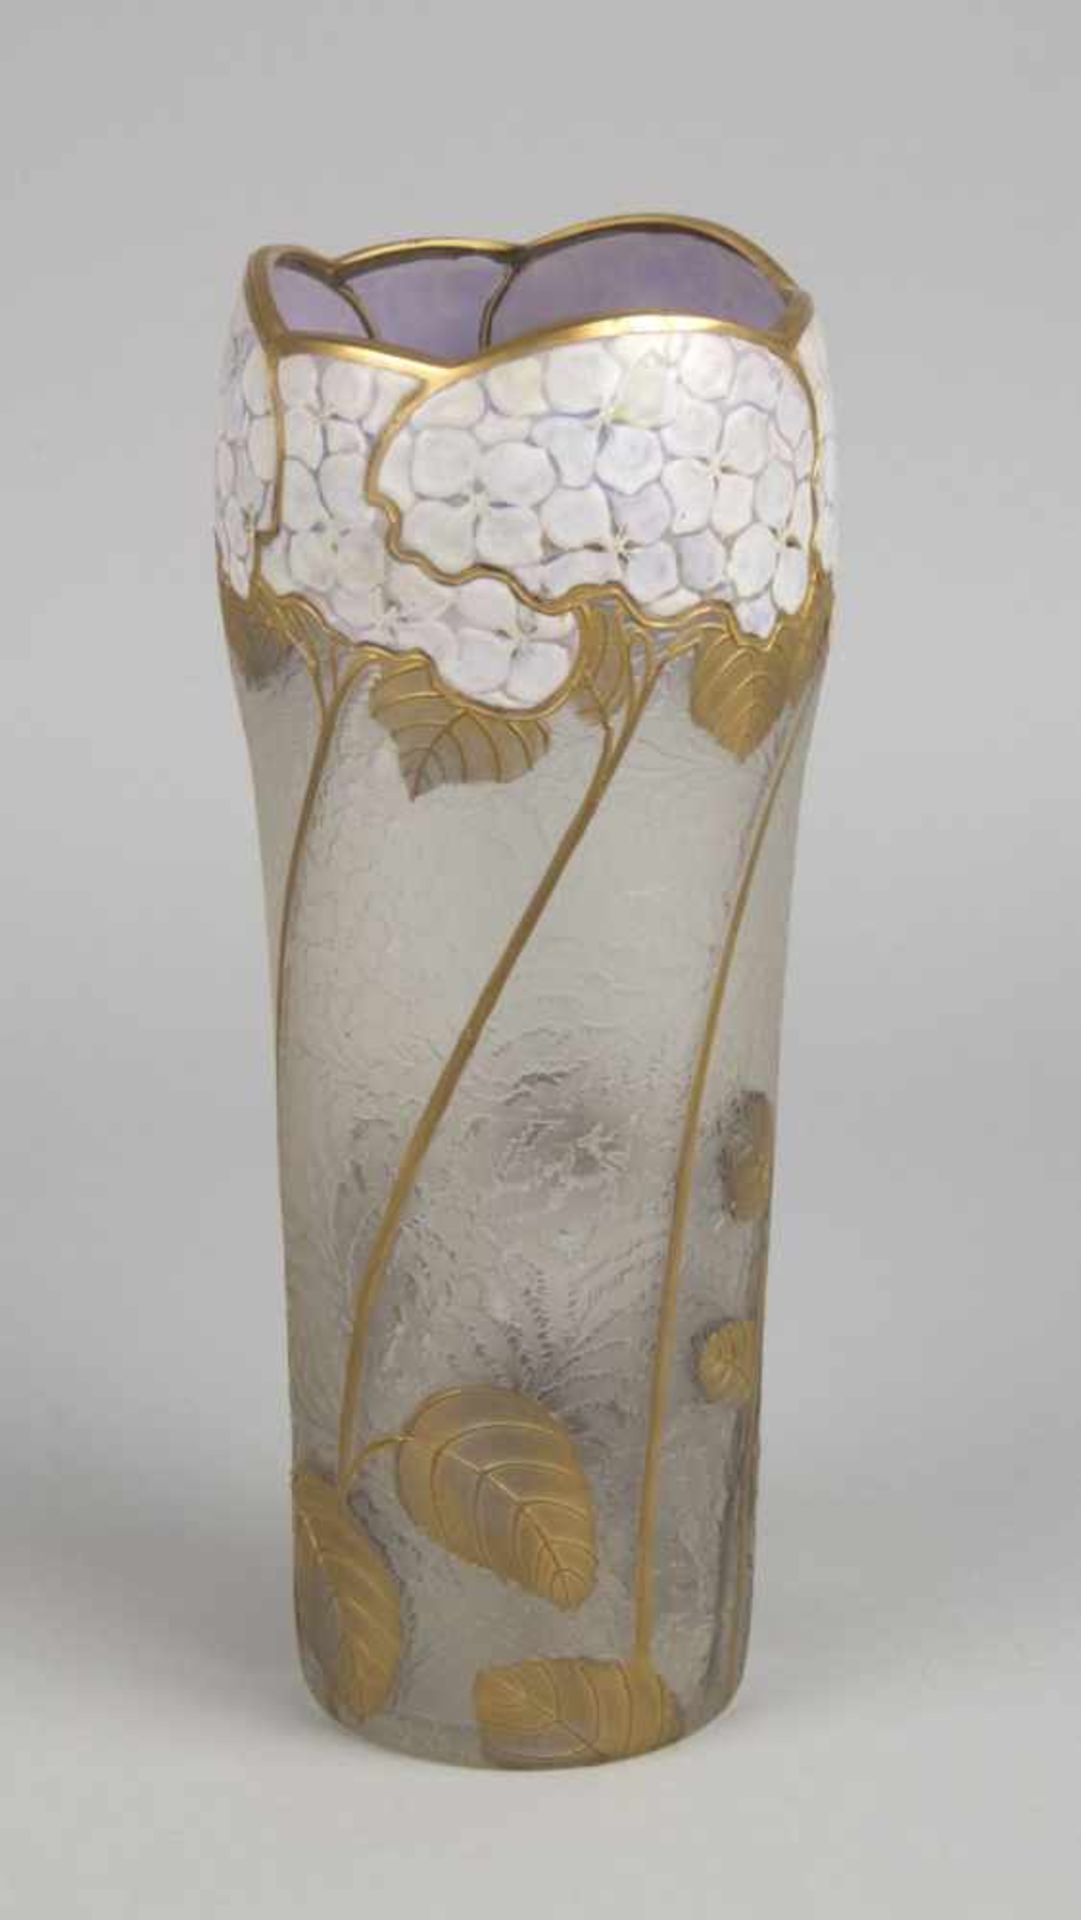 Jugendstil-Vase mit Hortensien-DekorFarbloses Glas. Flächig farnrankenartig geätzte Oberfläche. - Bild 2 aus 4